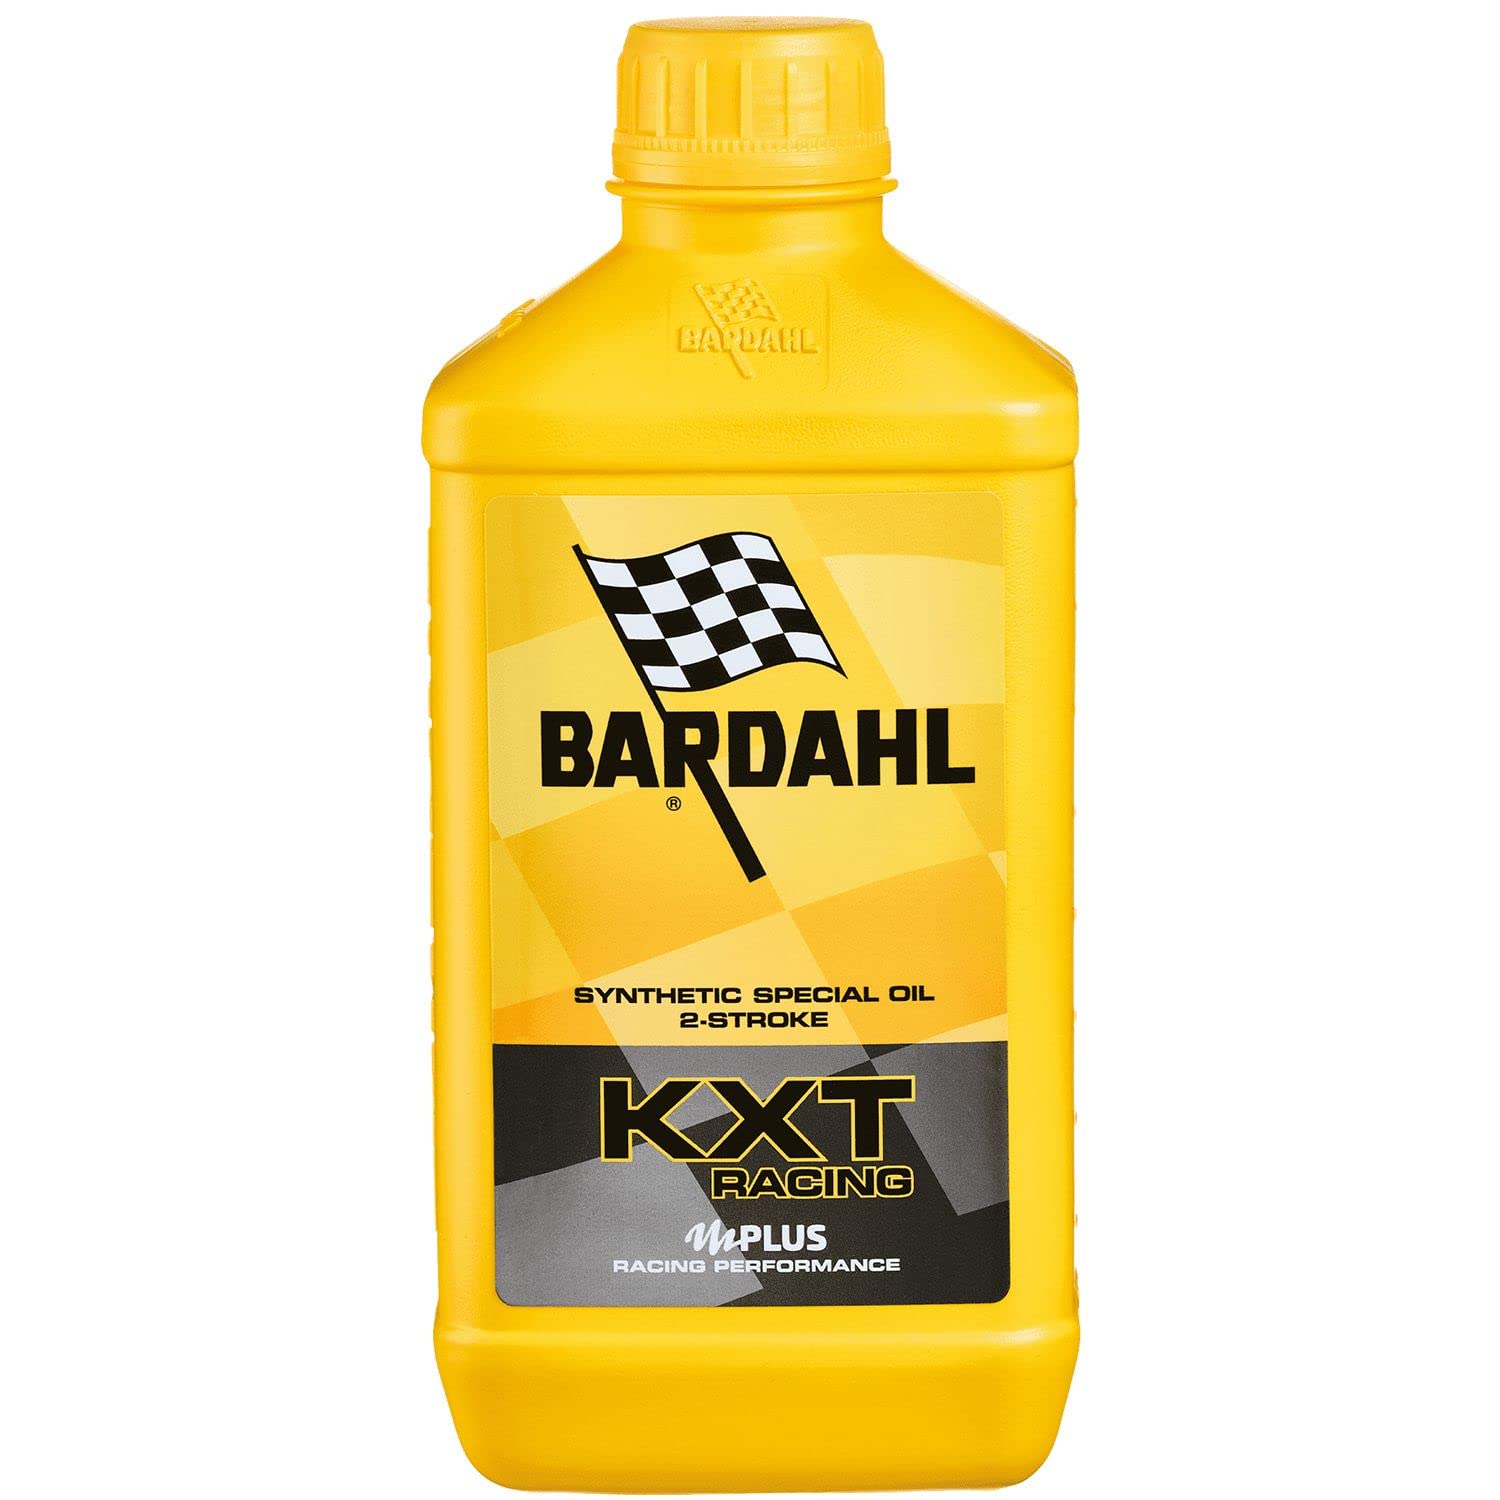 Bardahl - Öl mit Technologie KXT Racing für 2-Takt-Motoren, erhöht die Motorleistung, kann bei niedriger Dosierung verwendet werden, 1 Liter